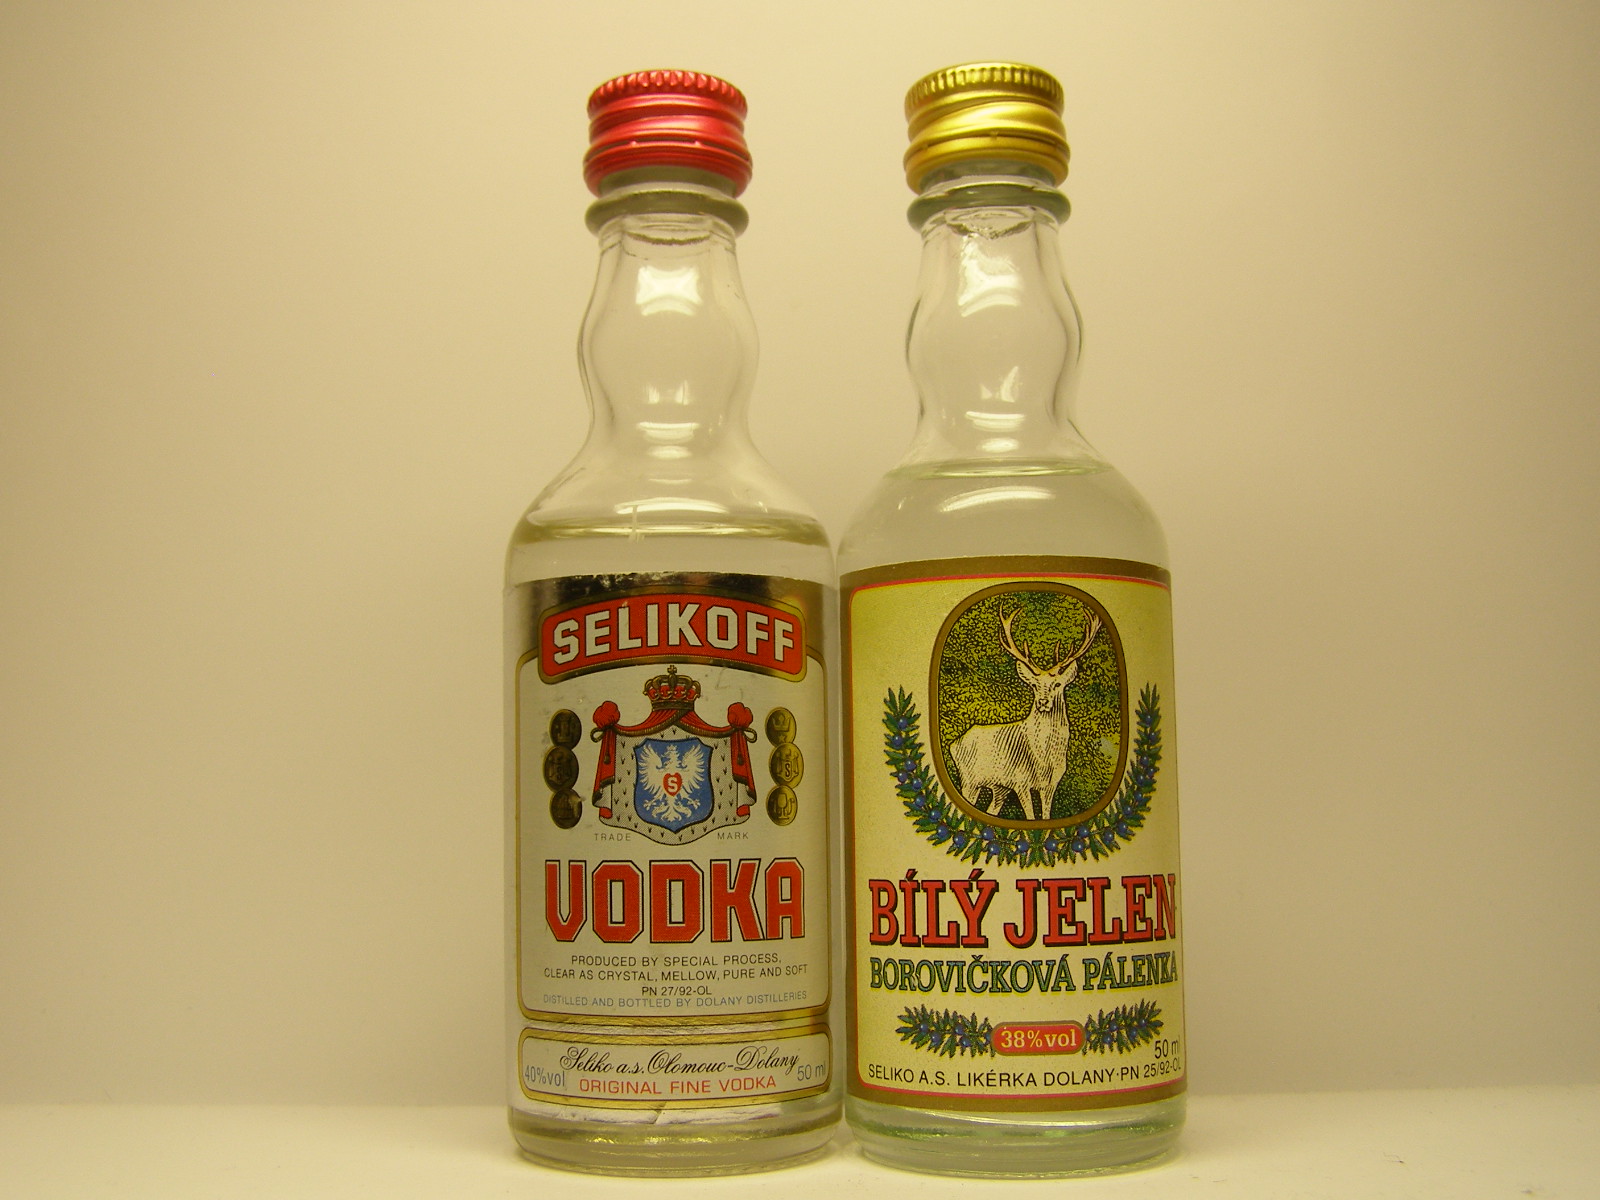 SELIKO Selikoff Vodka - Bíly Jeleň